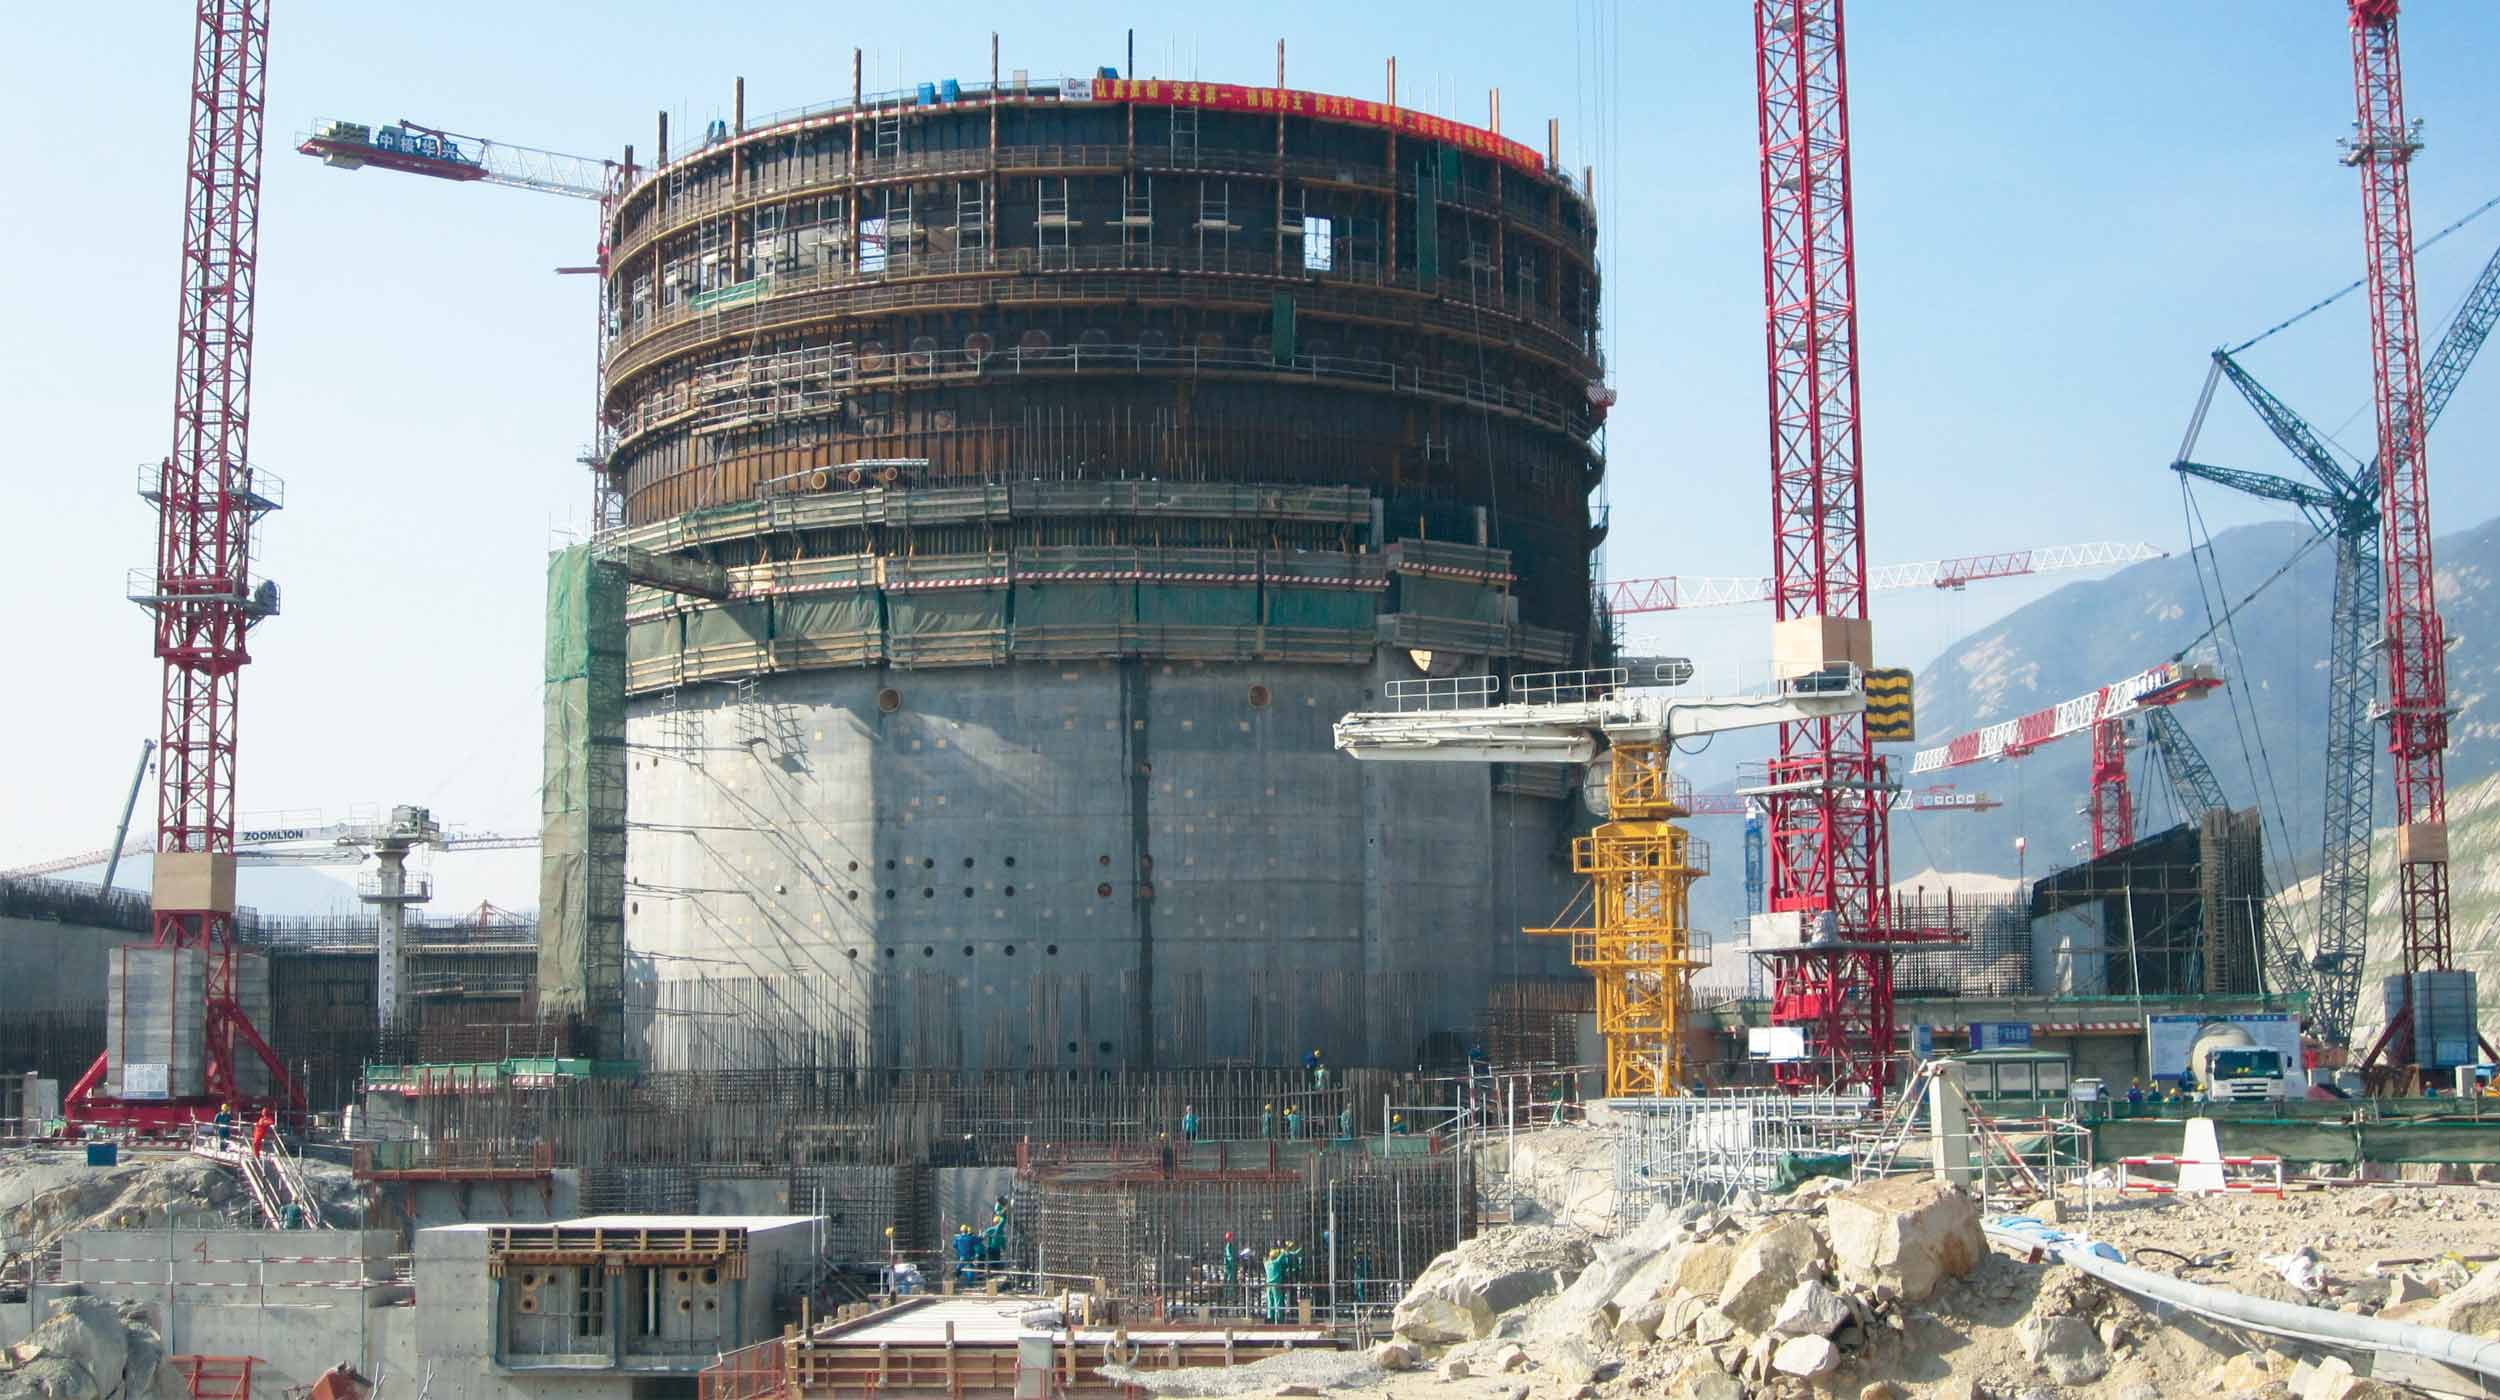 Elektrownia będzie działać w oparciu o wodno-ciśnieniowy reaktor trzeciej generacji wykonany w technologii EPR.